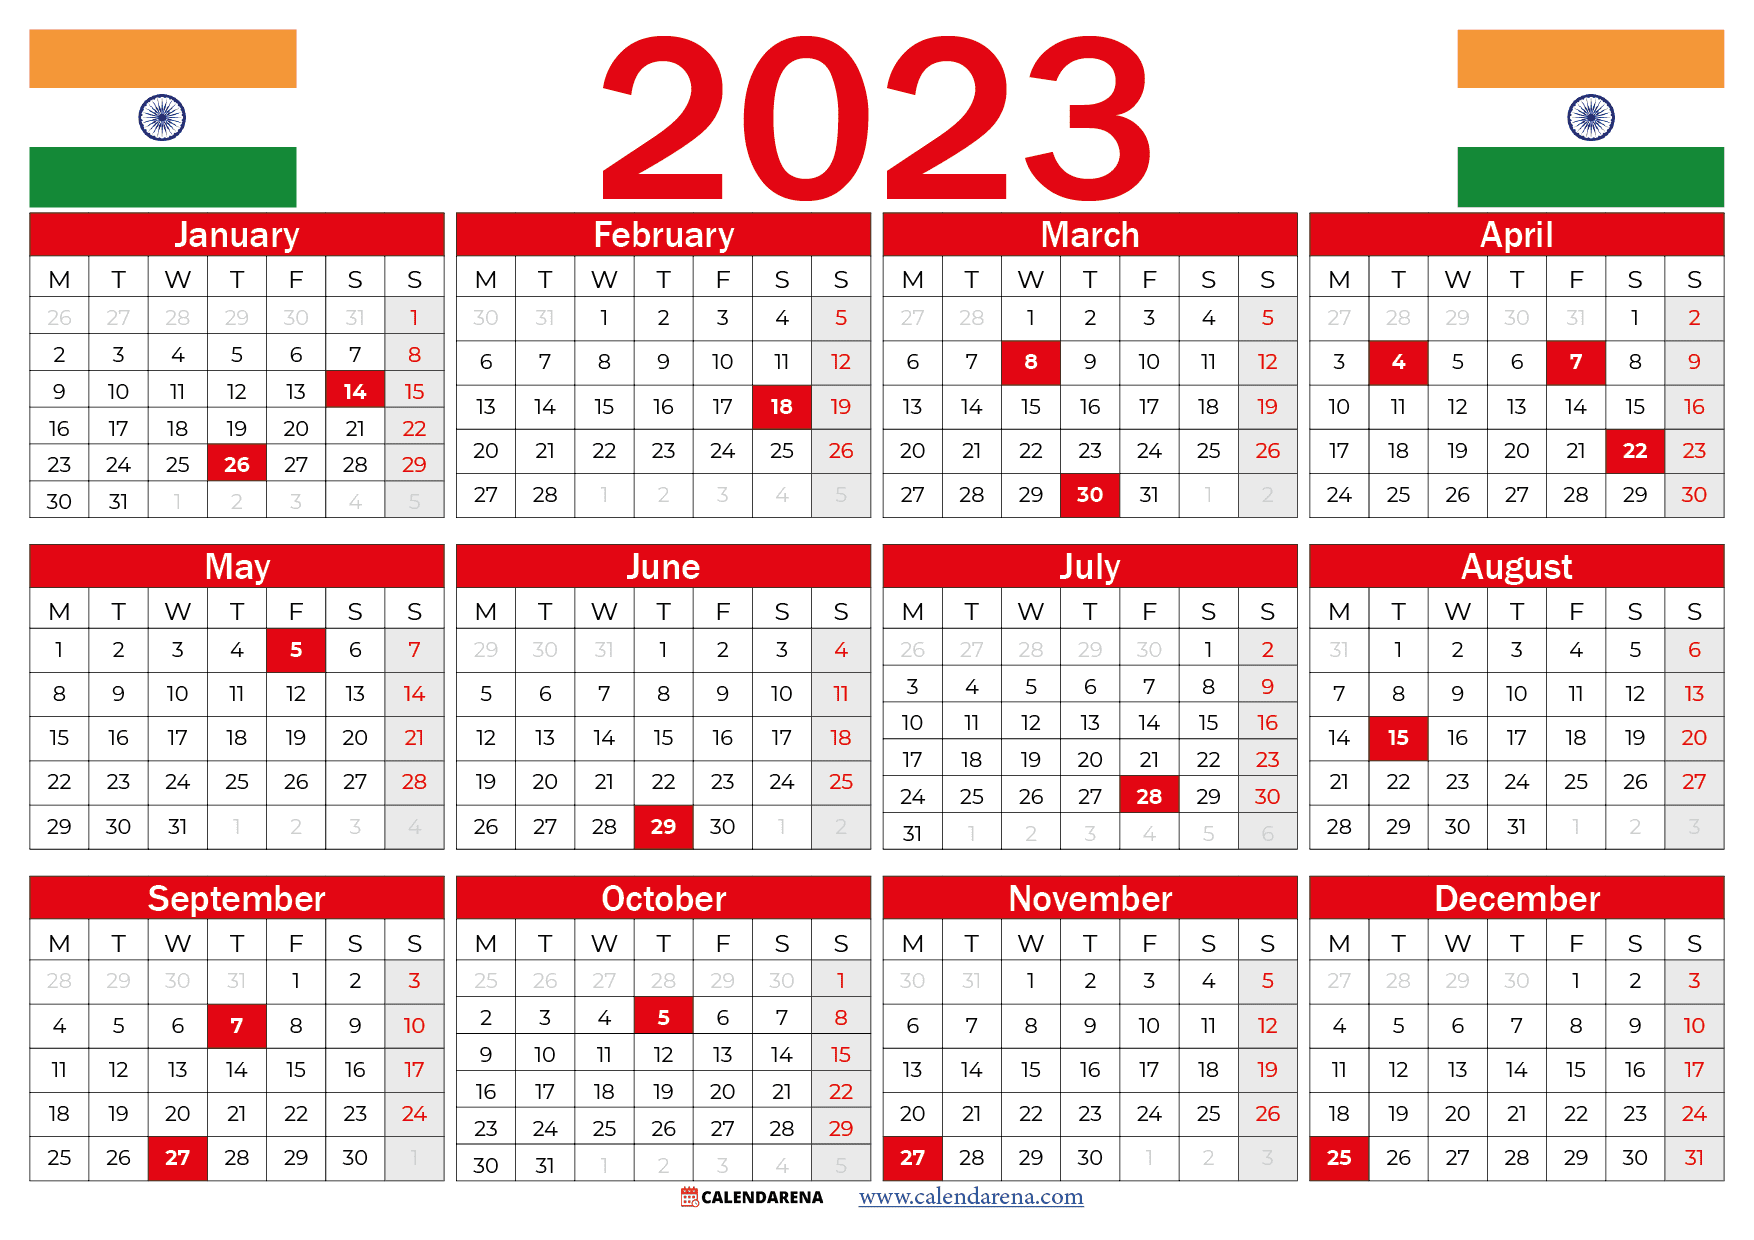 Festival calendar 2023 full list of 2023 festivals diwali holi durga